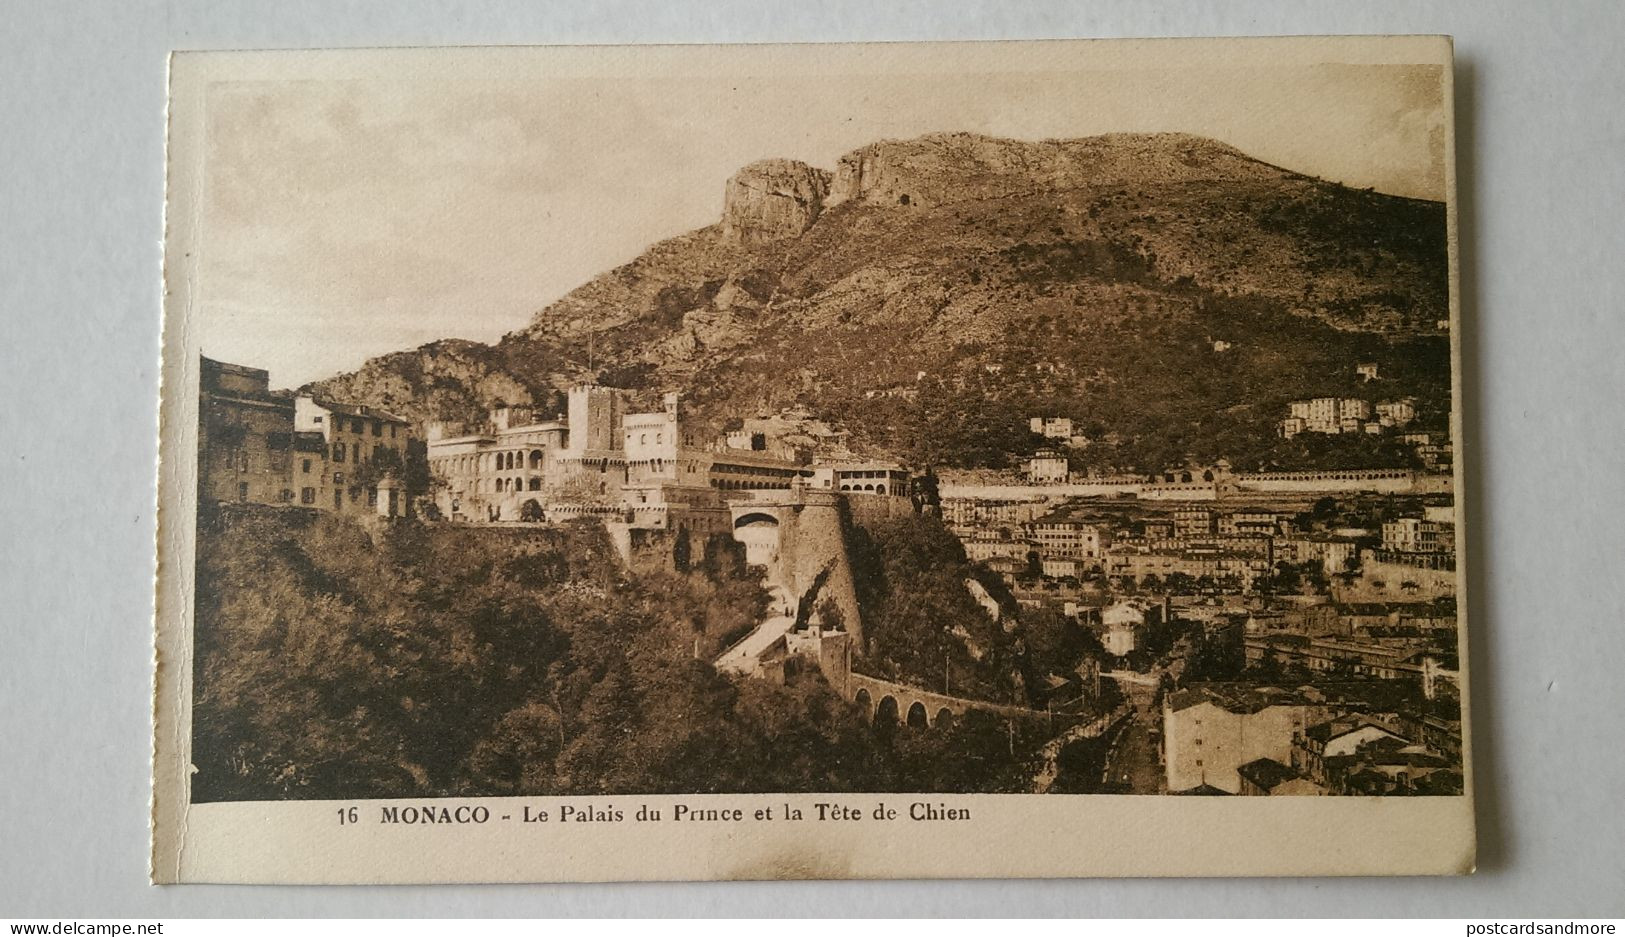 Monaco Monte Carlo Lot of 20 unused postcards Edition Madame Gonod Monte-Carlo ca. 1925